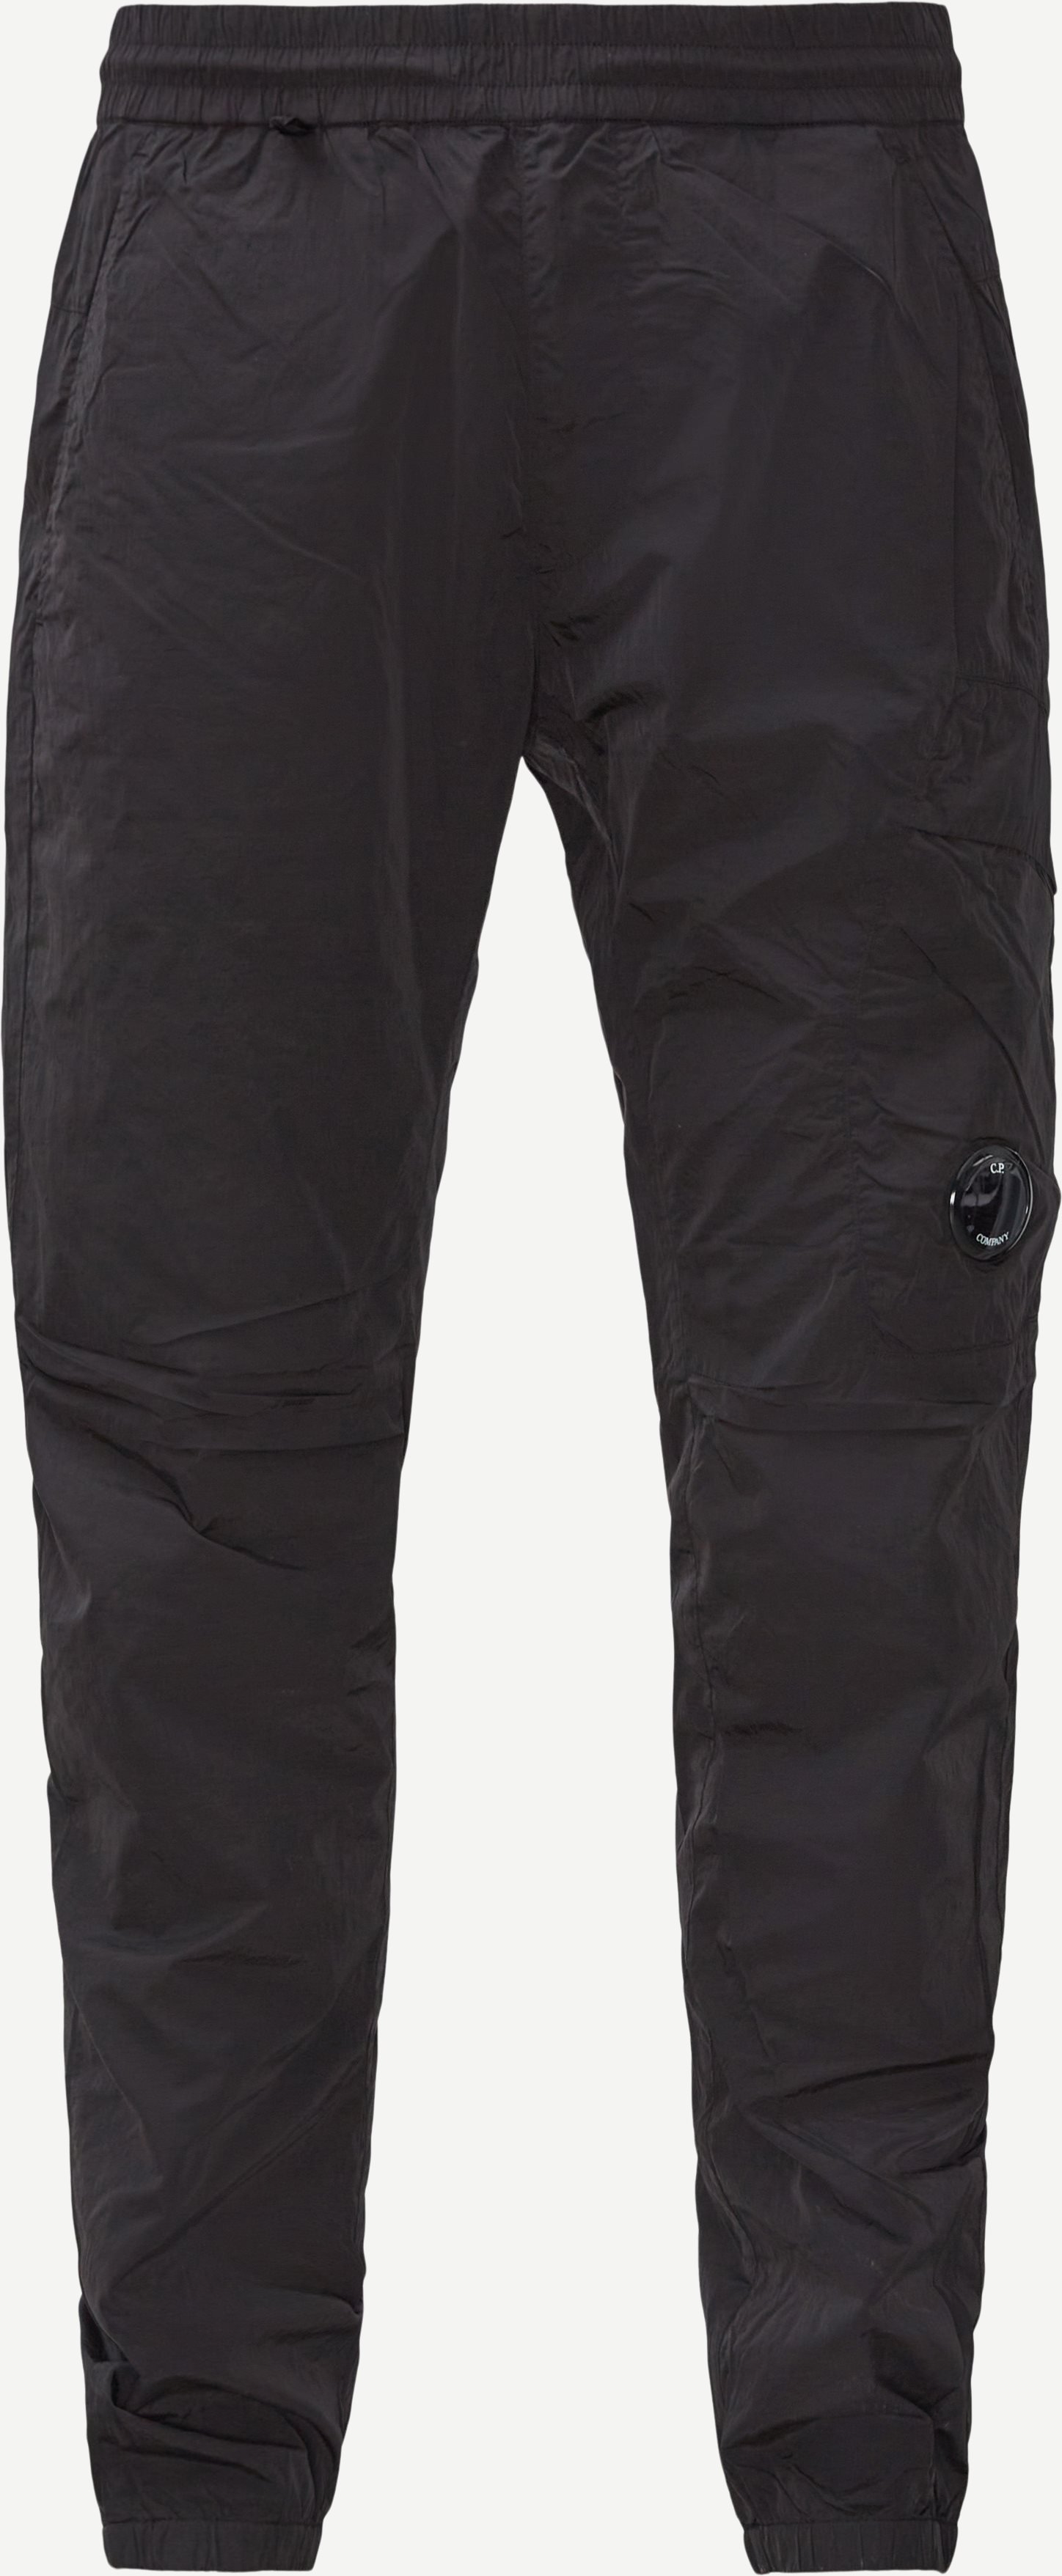 Chrome Cargo Pants - Bukser - Regular fit - Sort